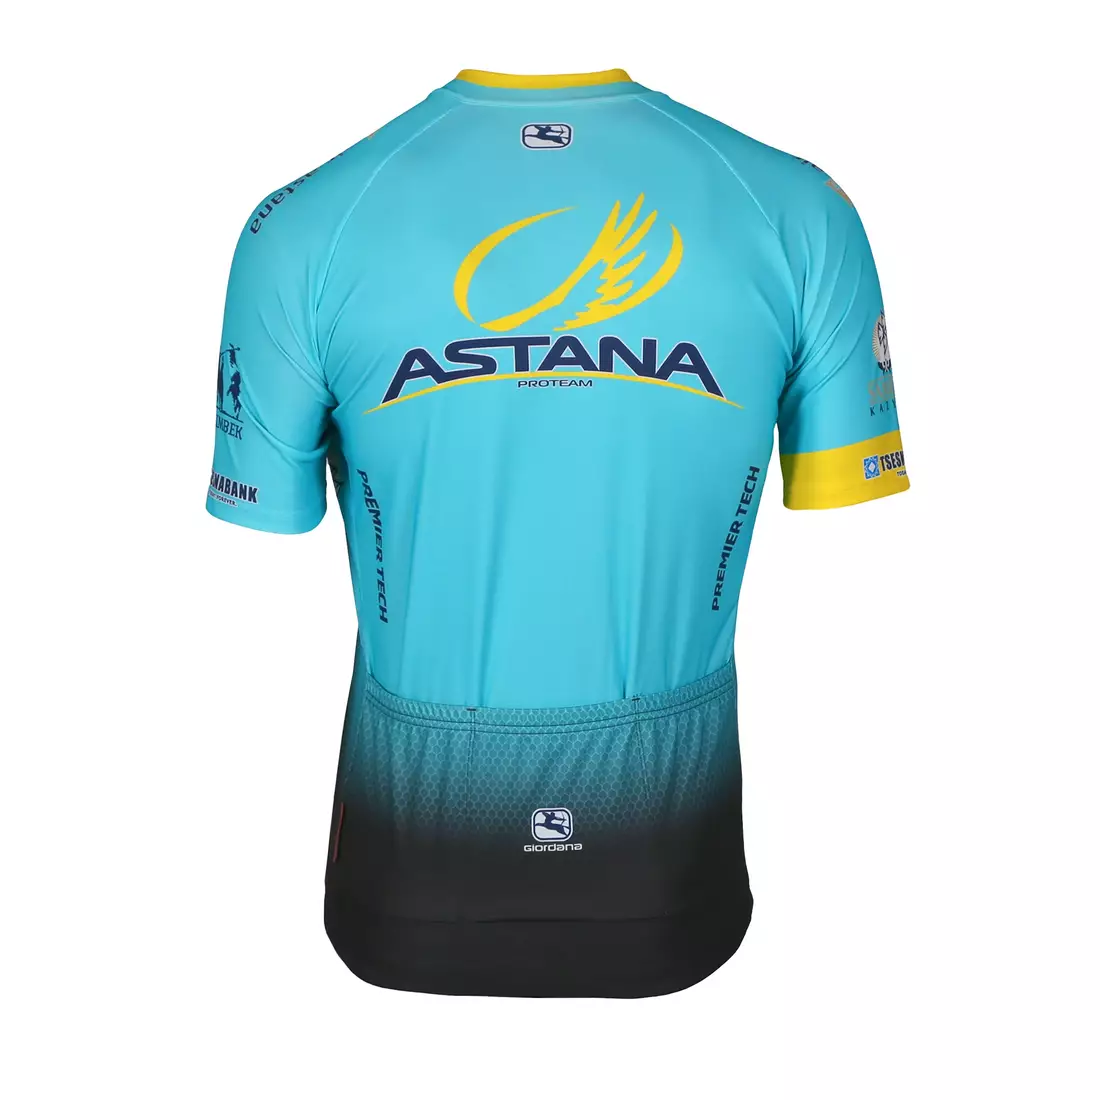 GIORDANA VERO PRO TEAM ASTANA 2017 cycling jersey